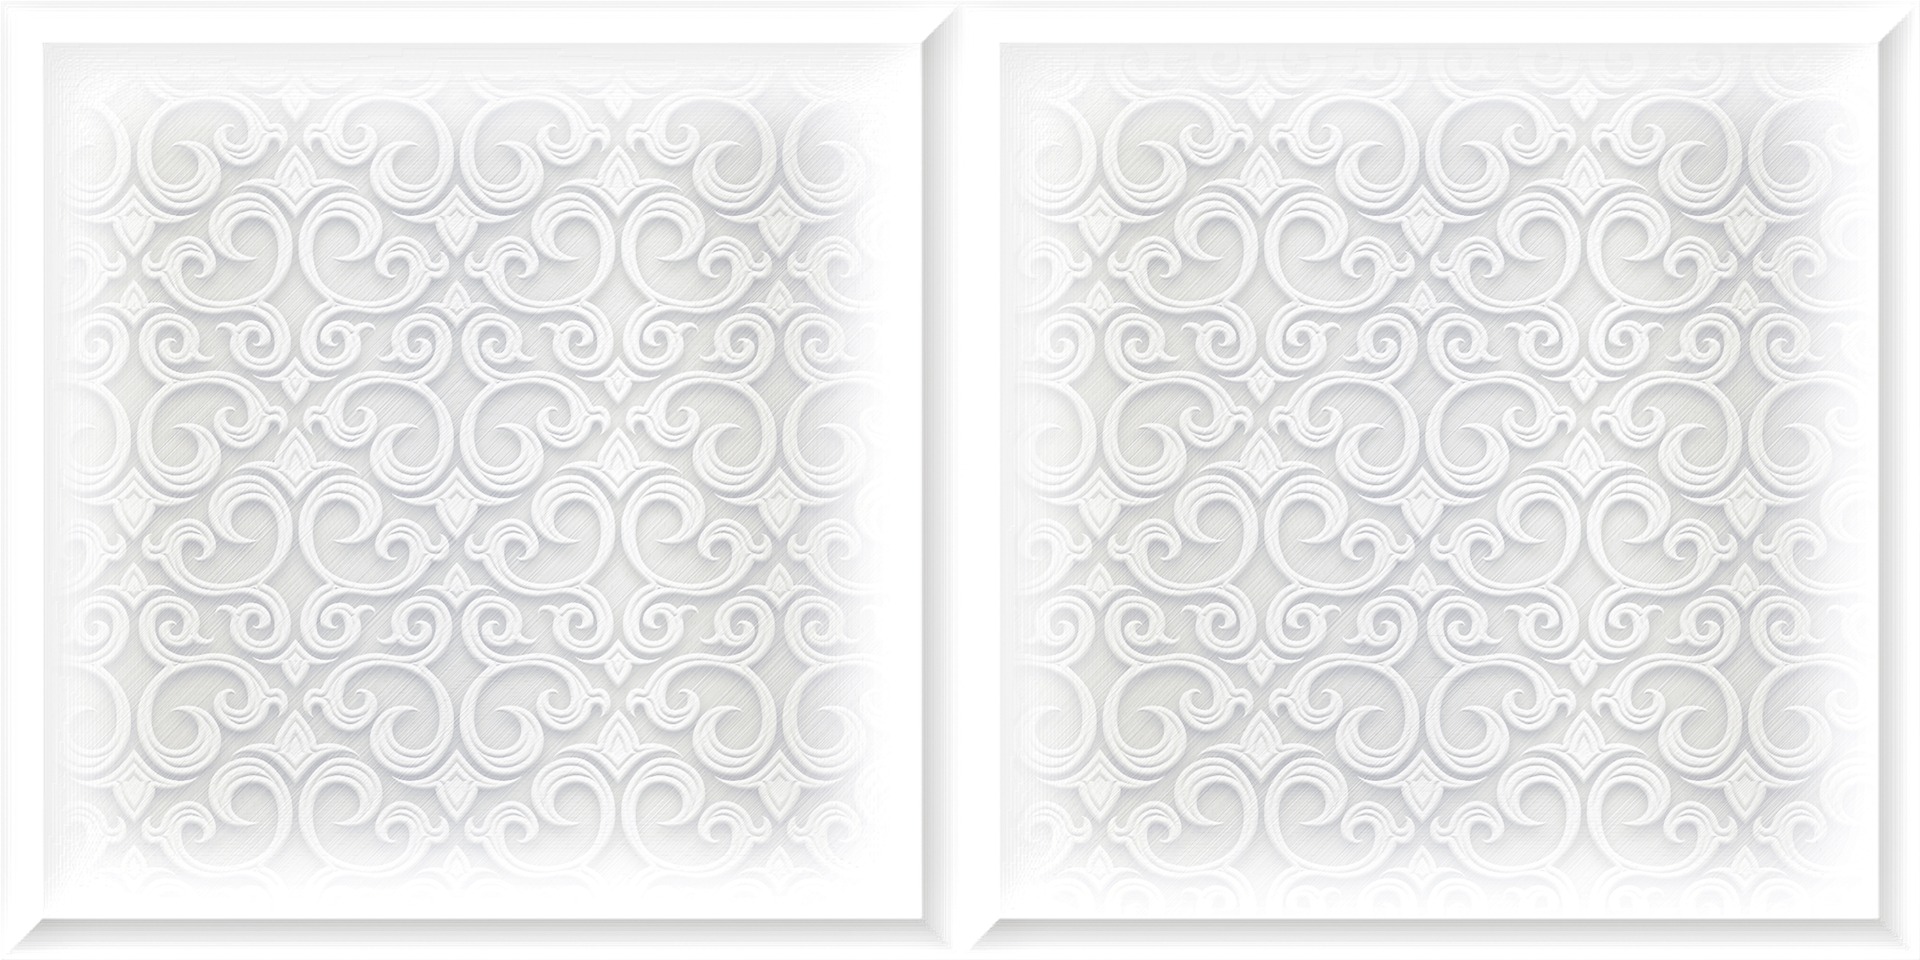 Pattern Tiles for Bathroom Tiles